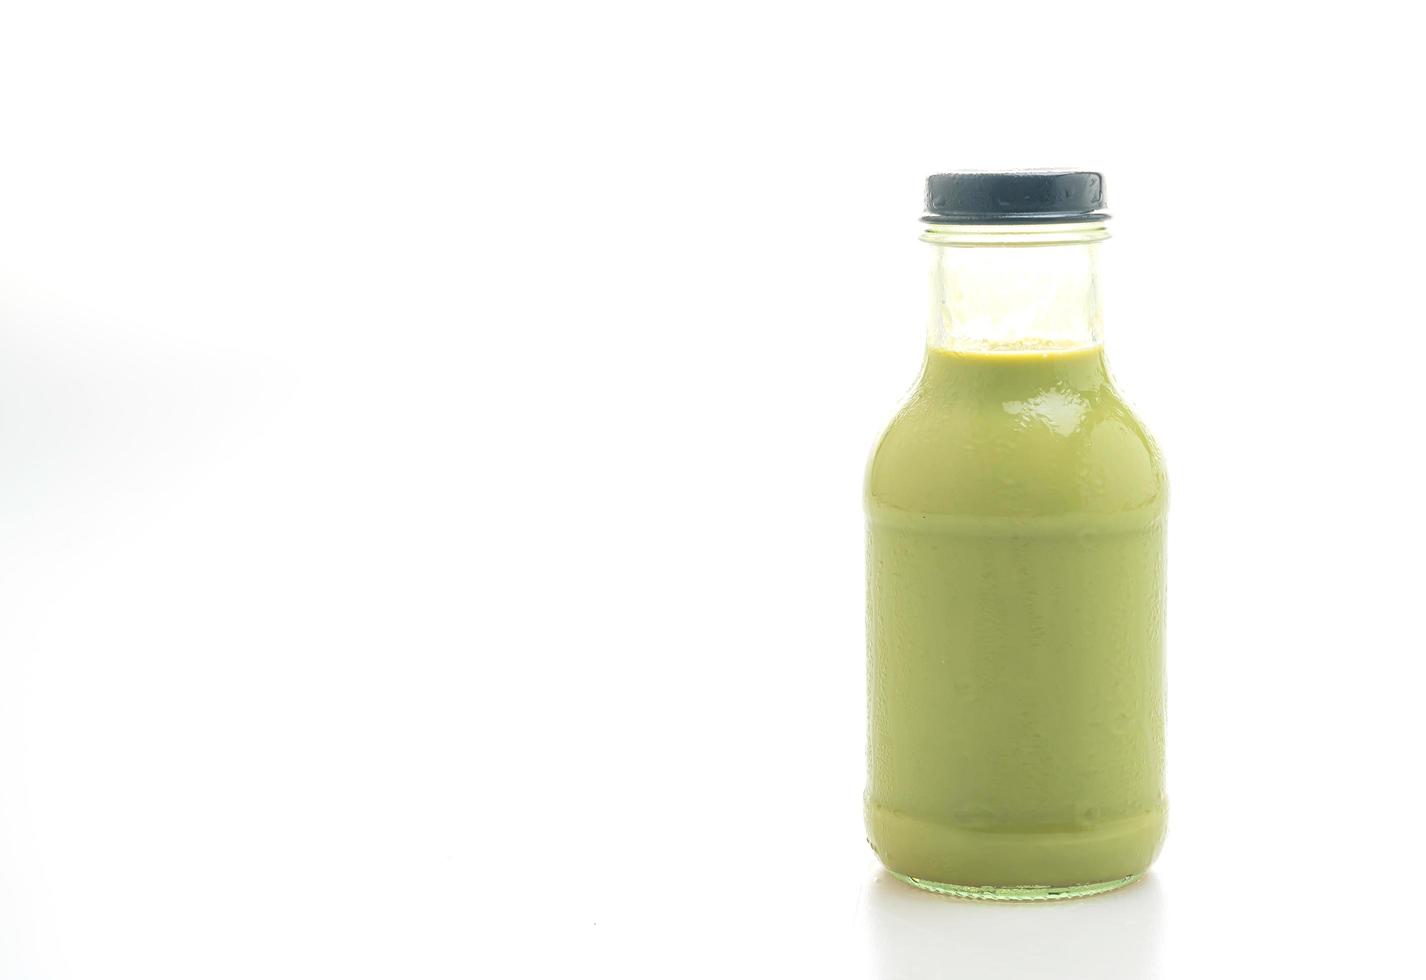 matcha chá verde com leite em garrafa de vidro foto